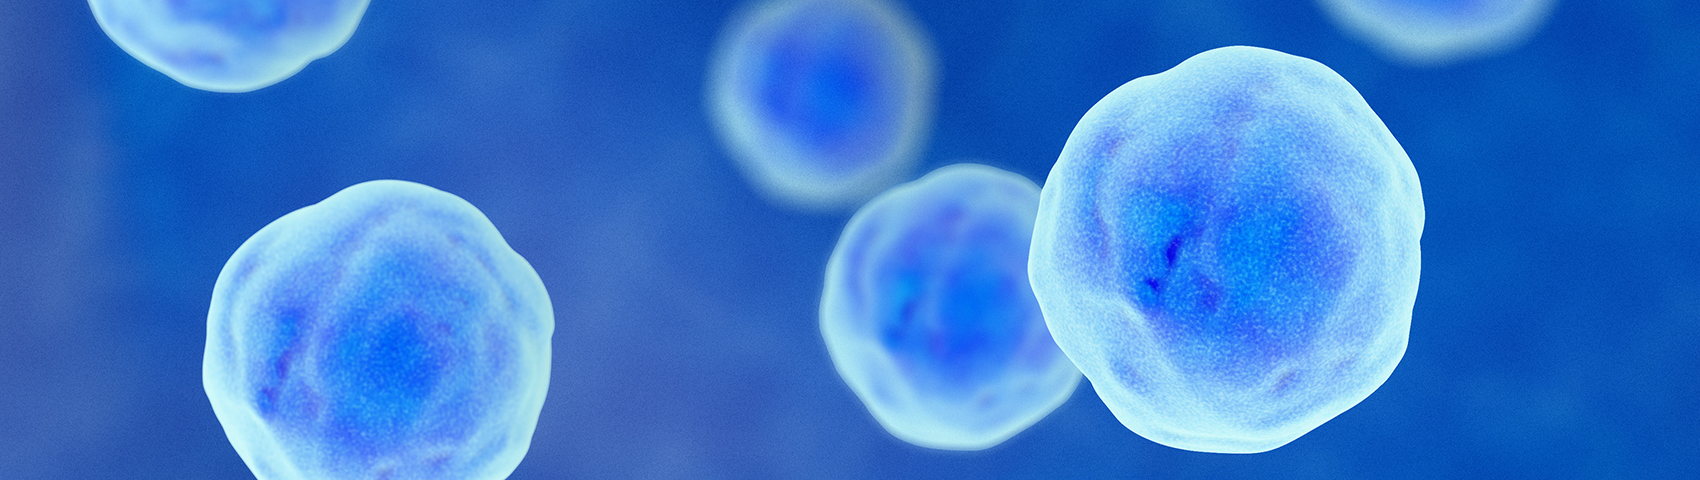 Imagen microscópica de células. Se presentan como redondas y azules